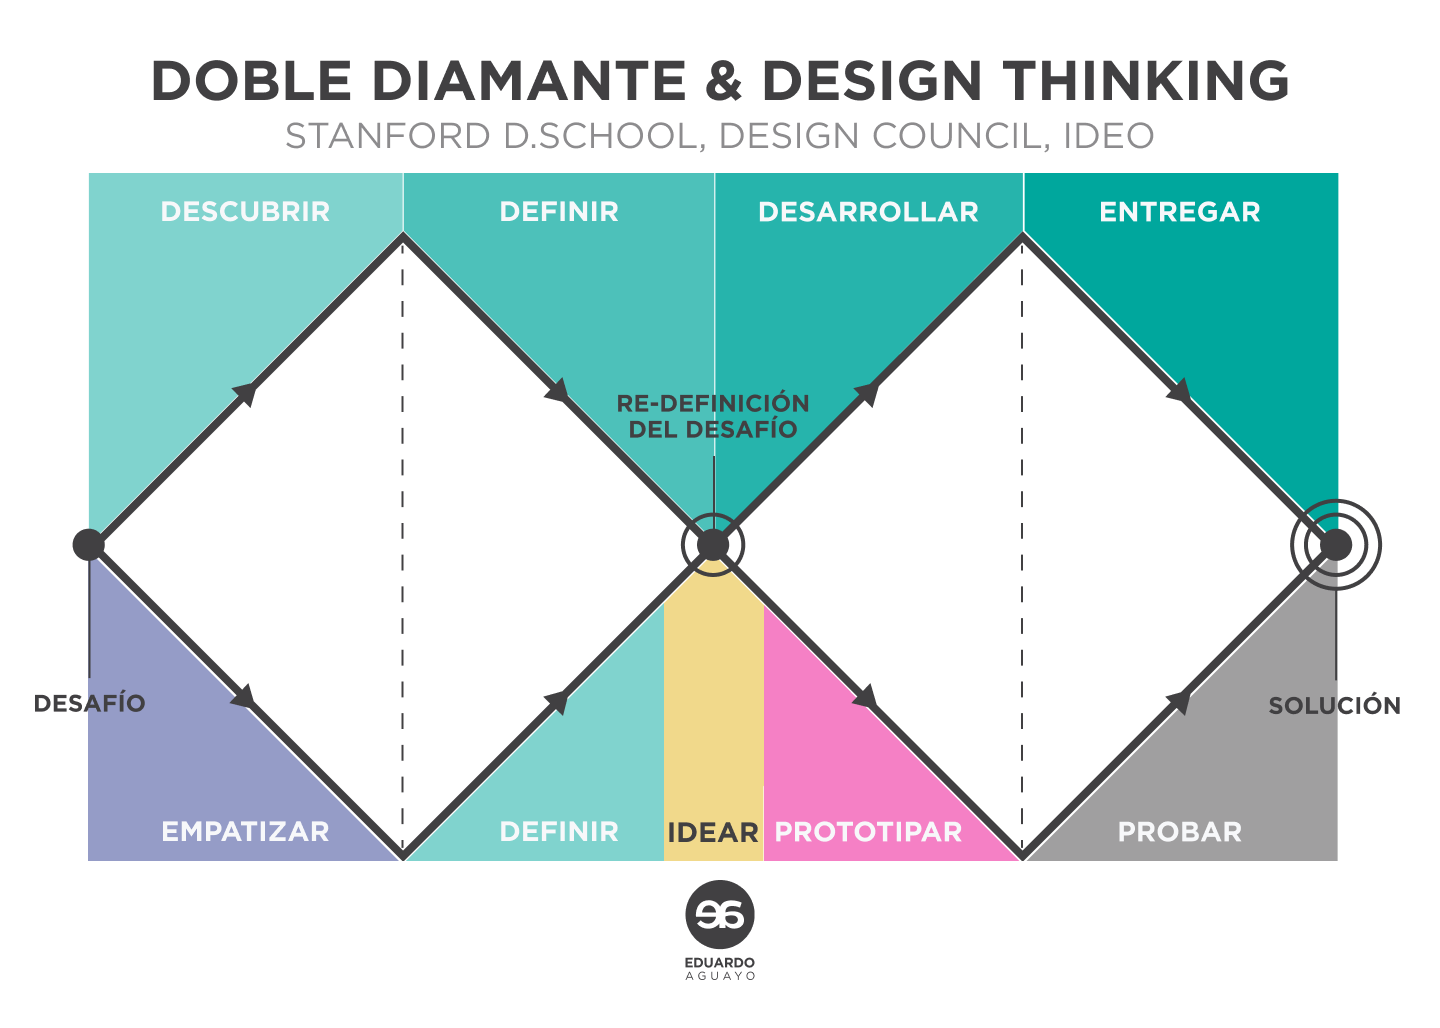 Comparación entre design thinking y el doble diamante.